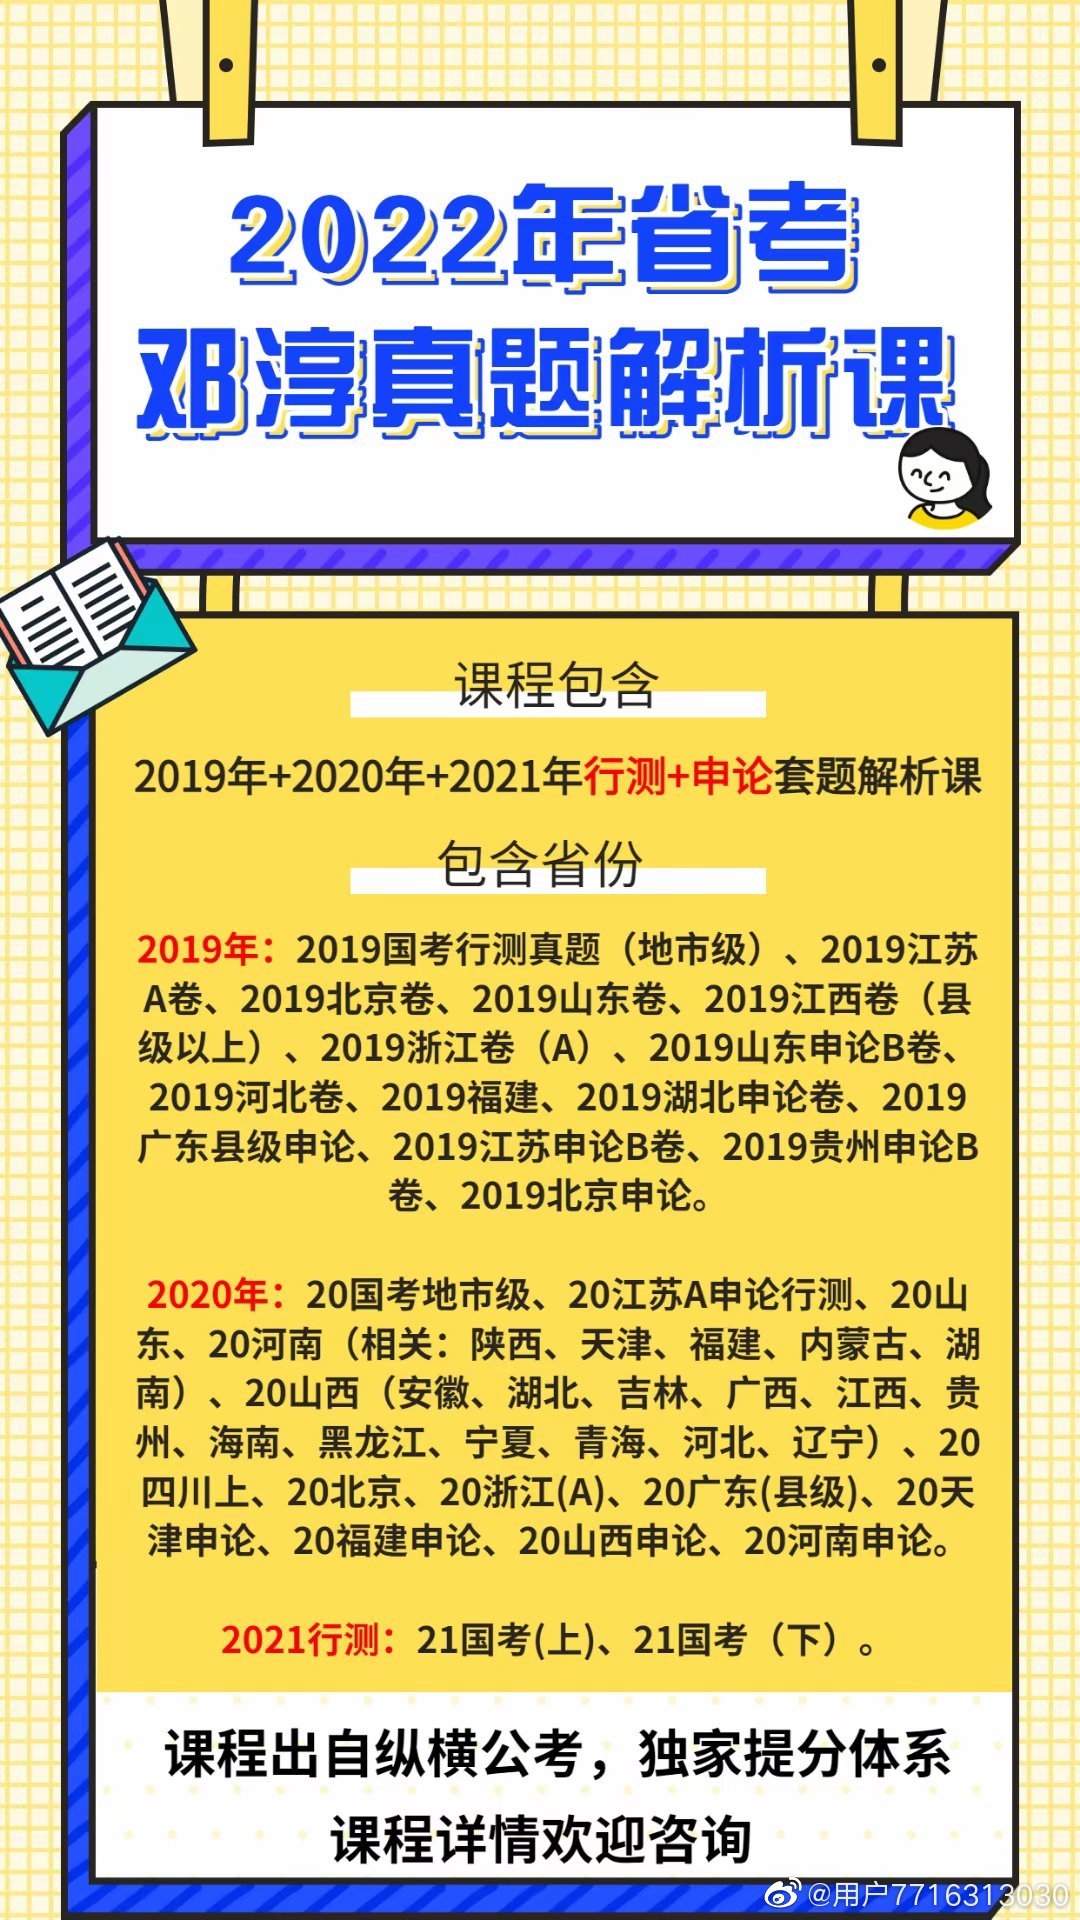 2022省考邓淳真题解析课